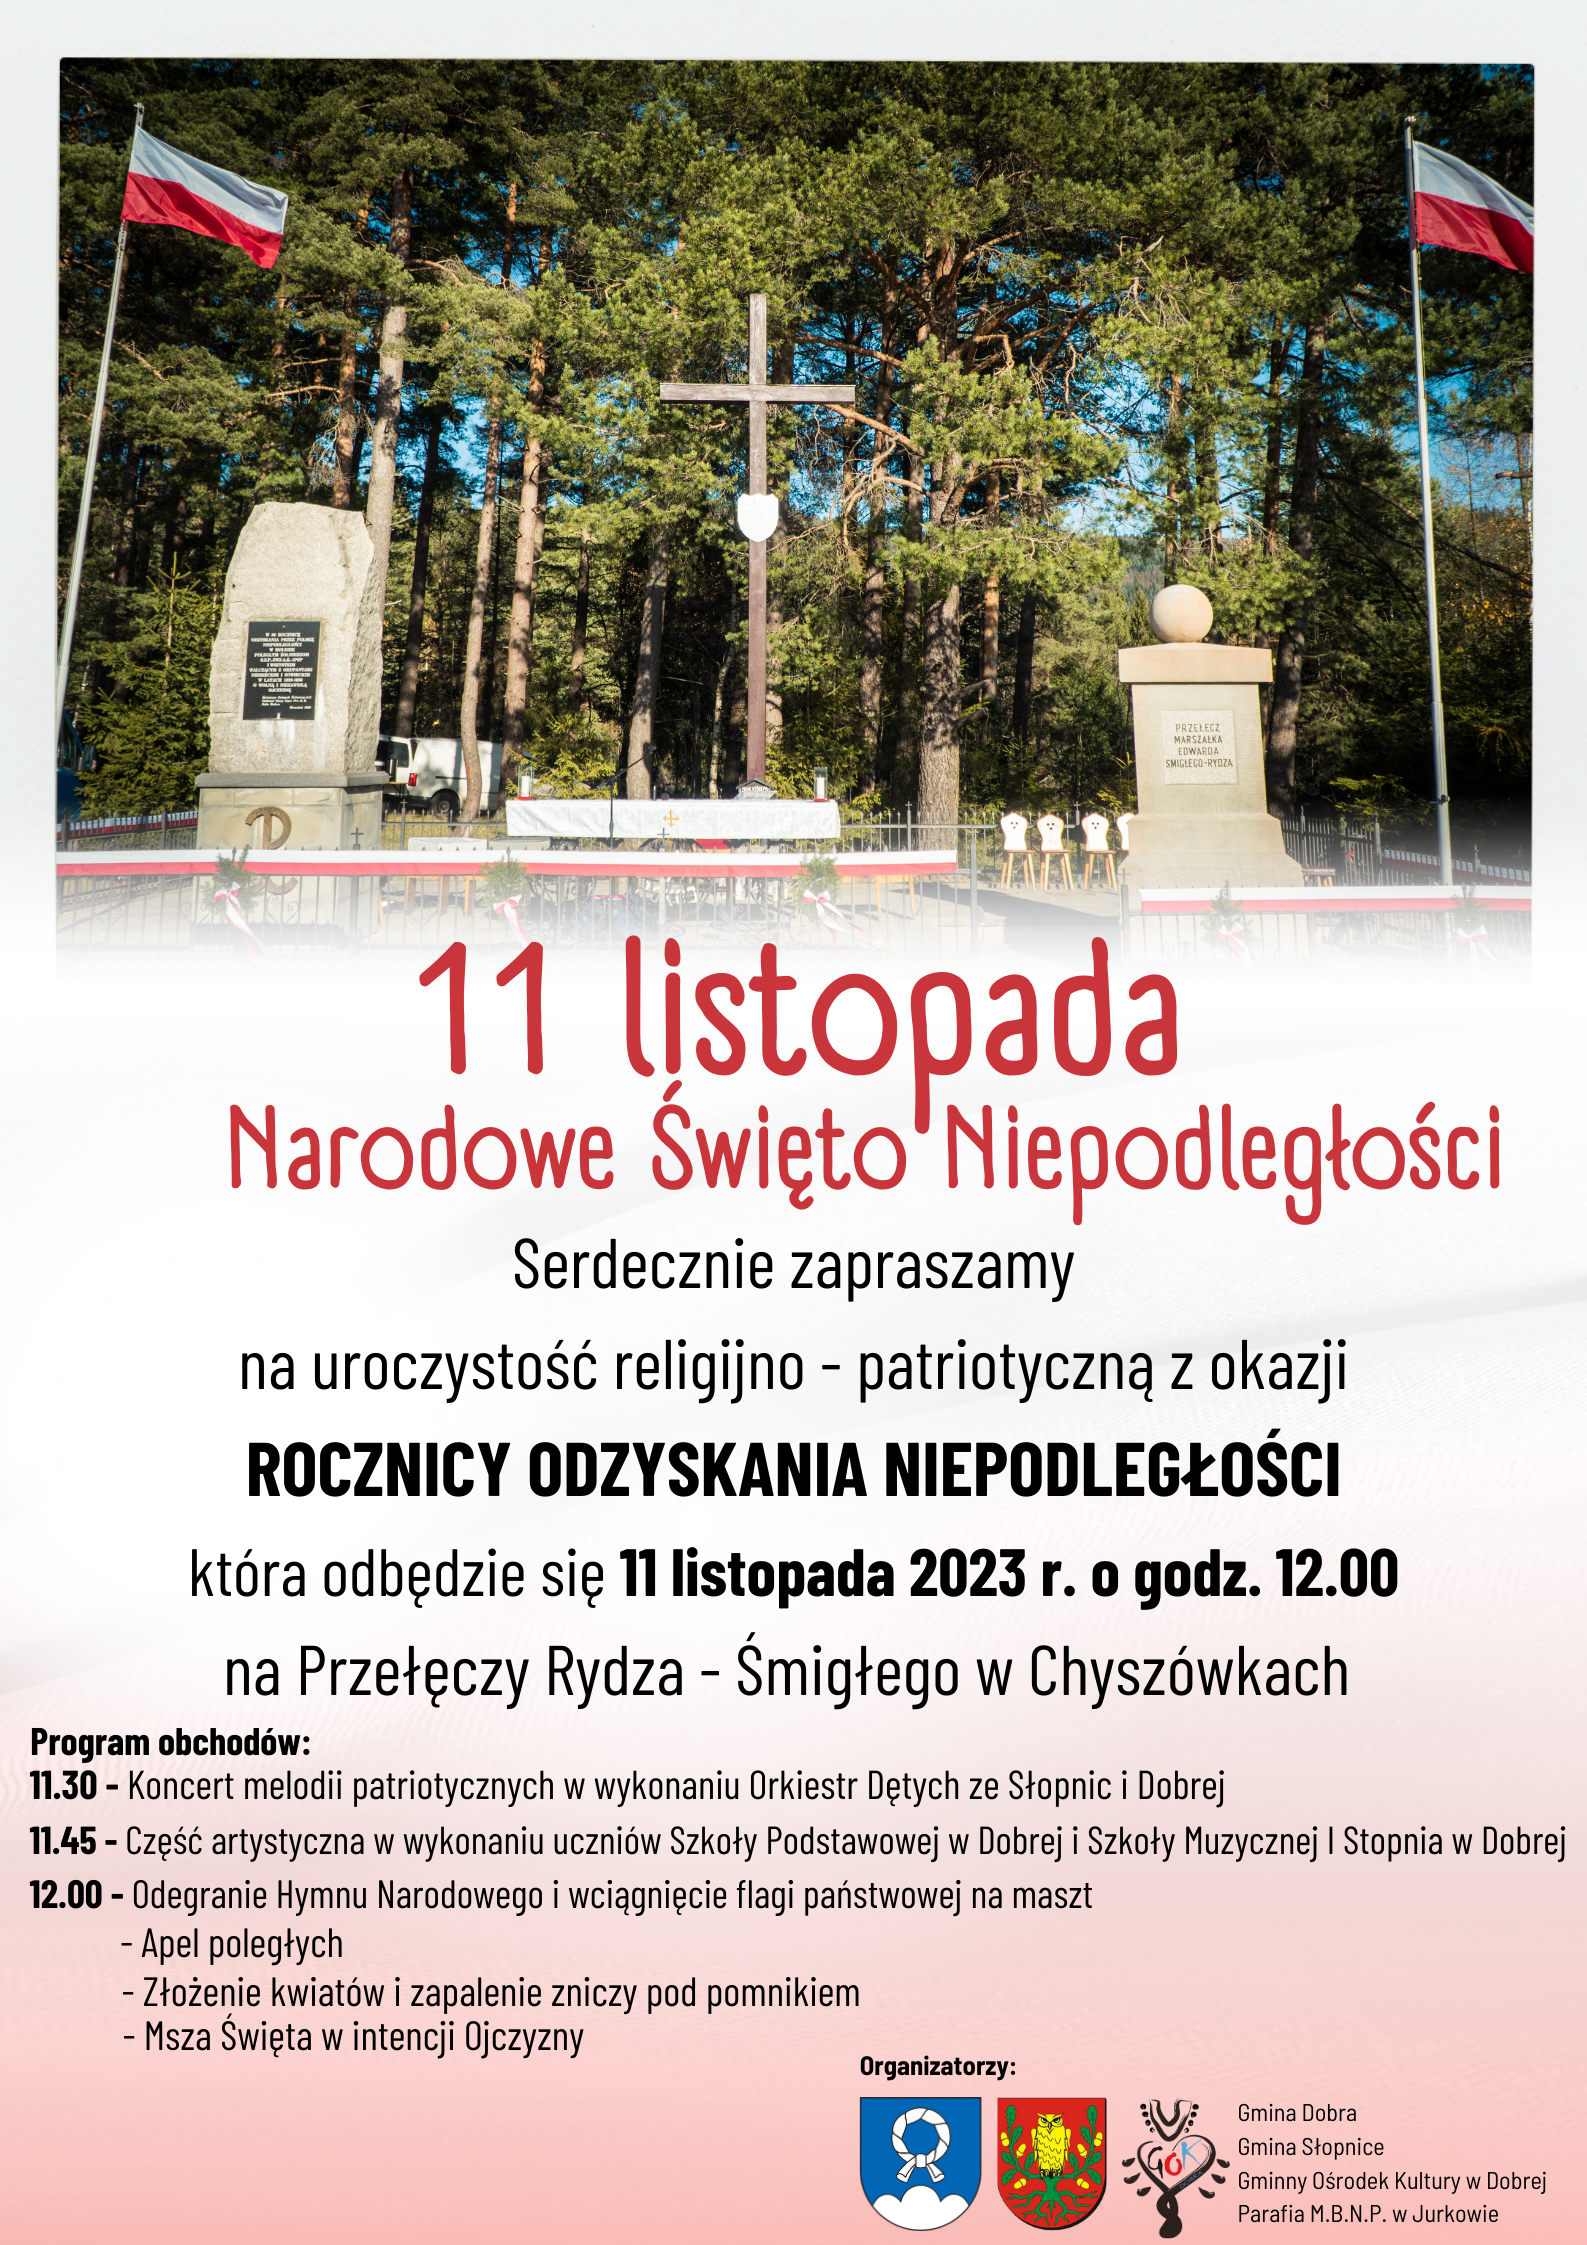 Narodowe Święto Niepodległości - 11 listopada 2023 r. Przełęcz Rydza - Śmigłego w Chyszówkach